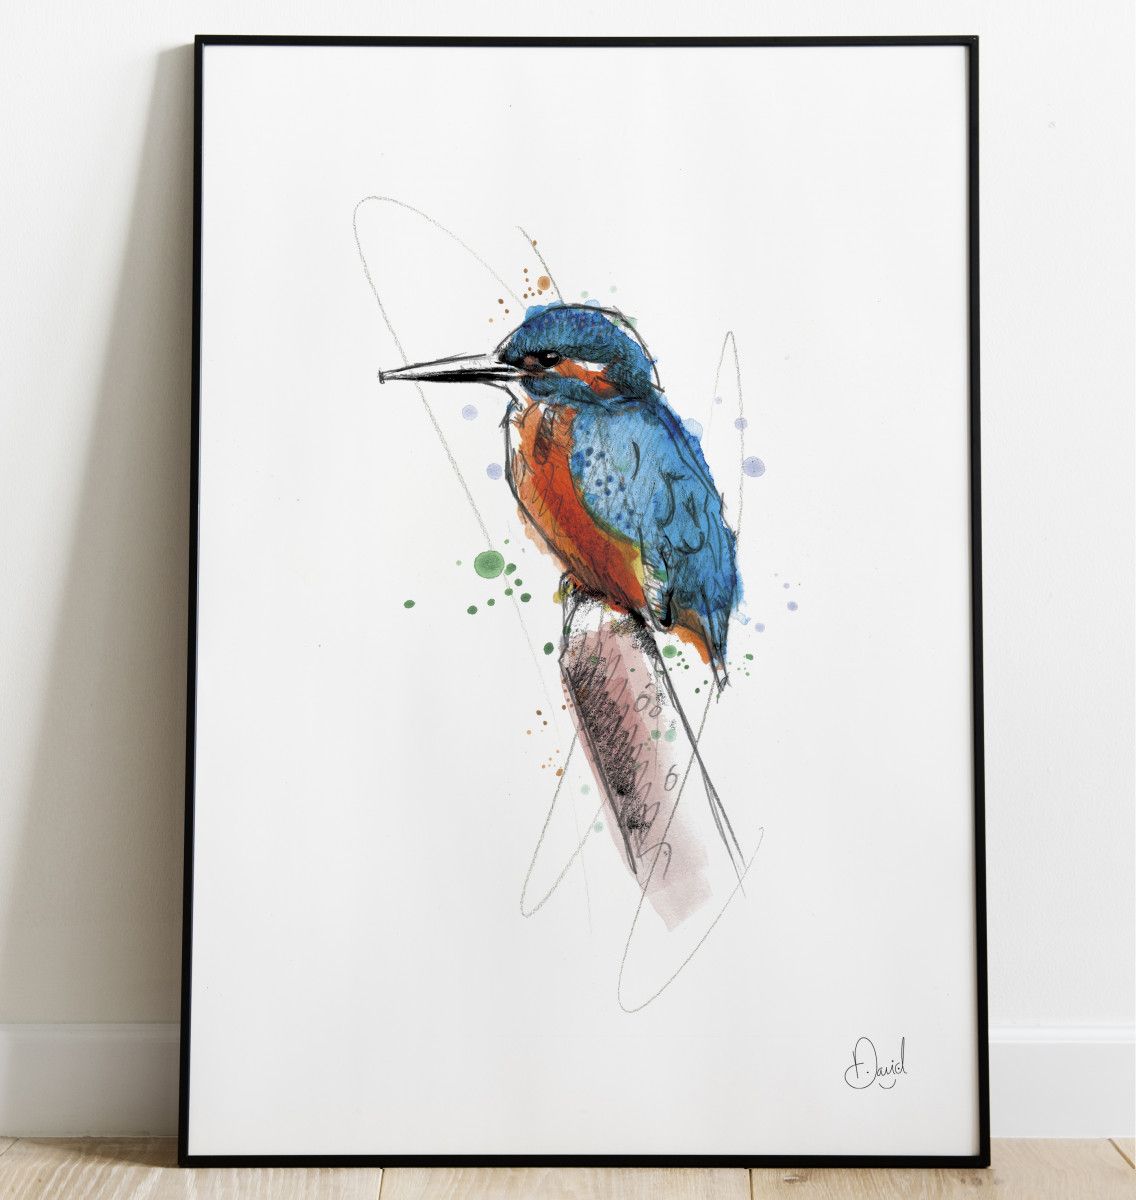 Kingfisher – The Kingfisher and I art print